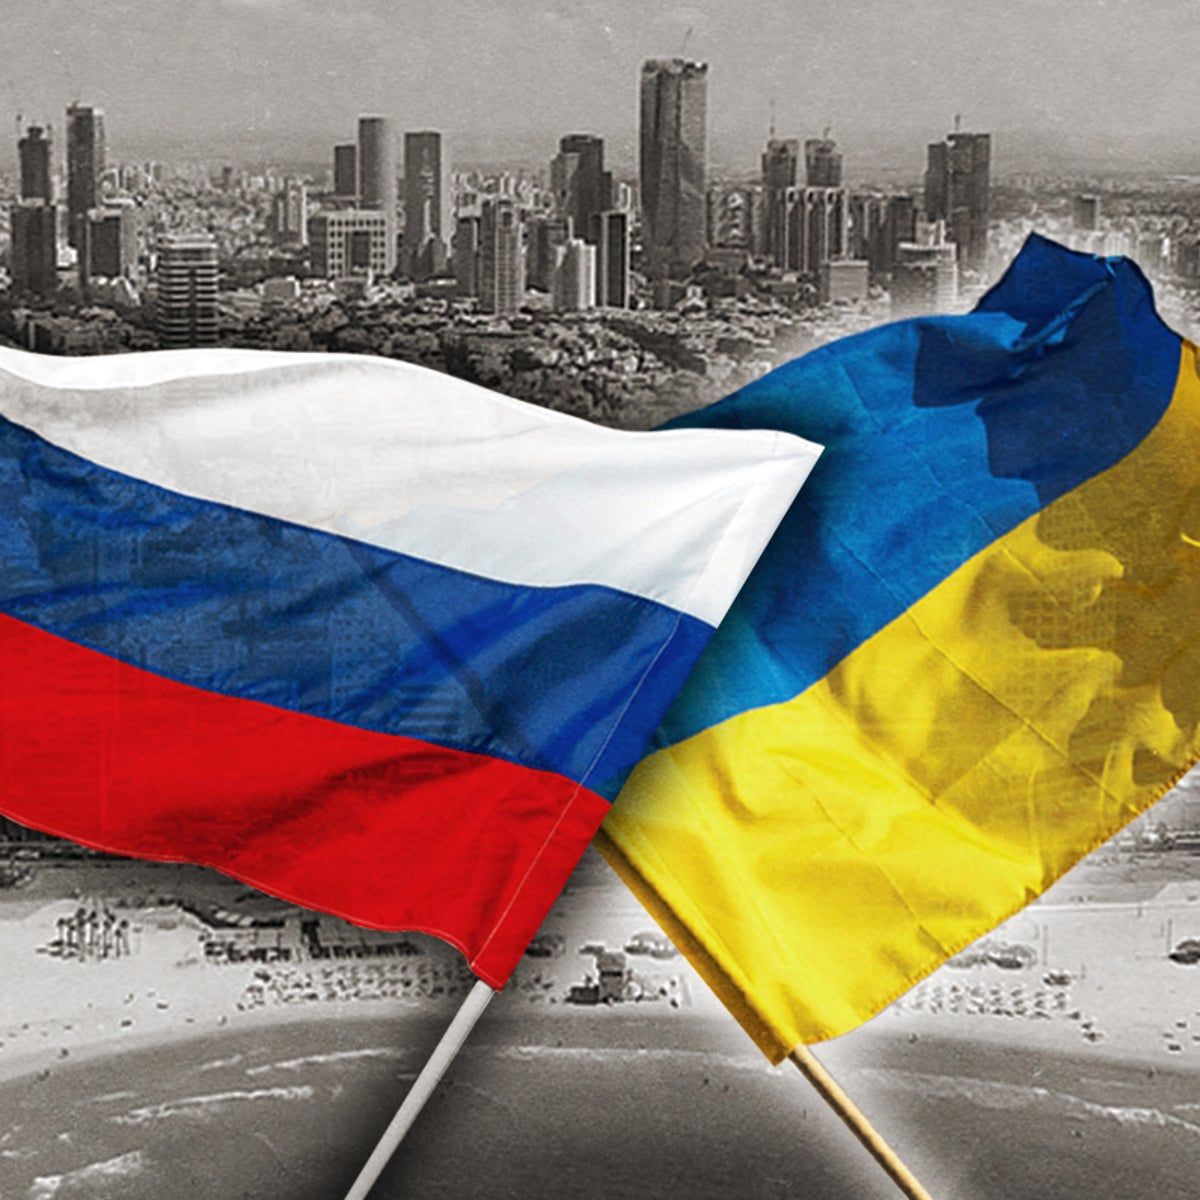 Ucrania Y rusia, Tencion Y agresion constante